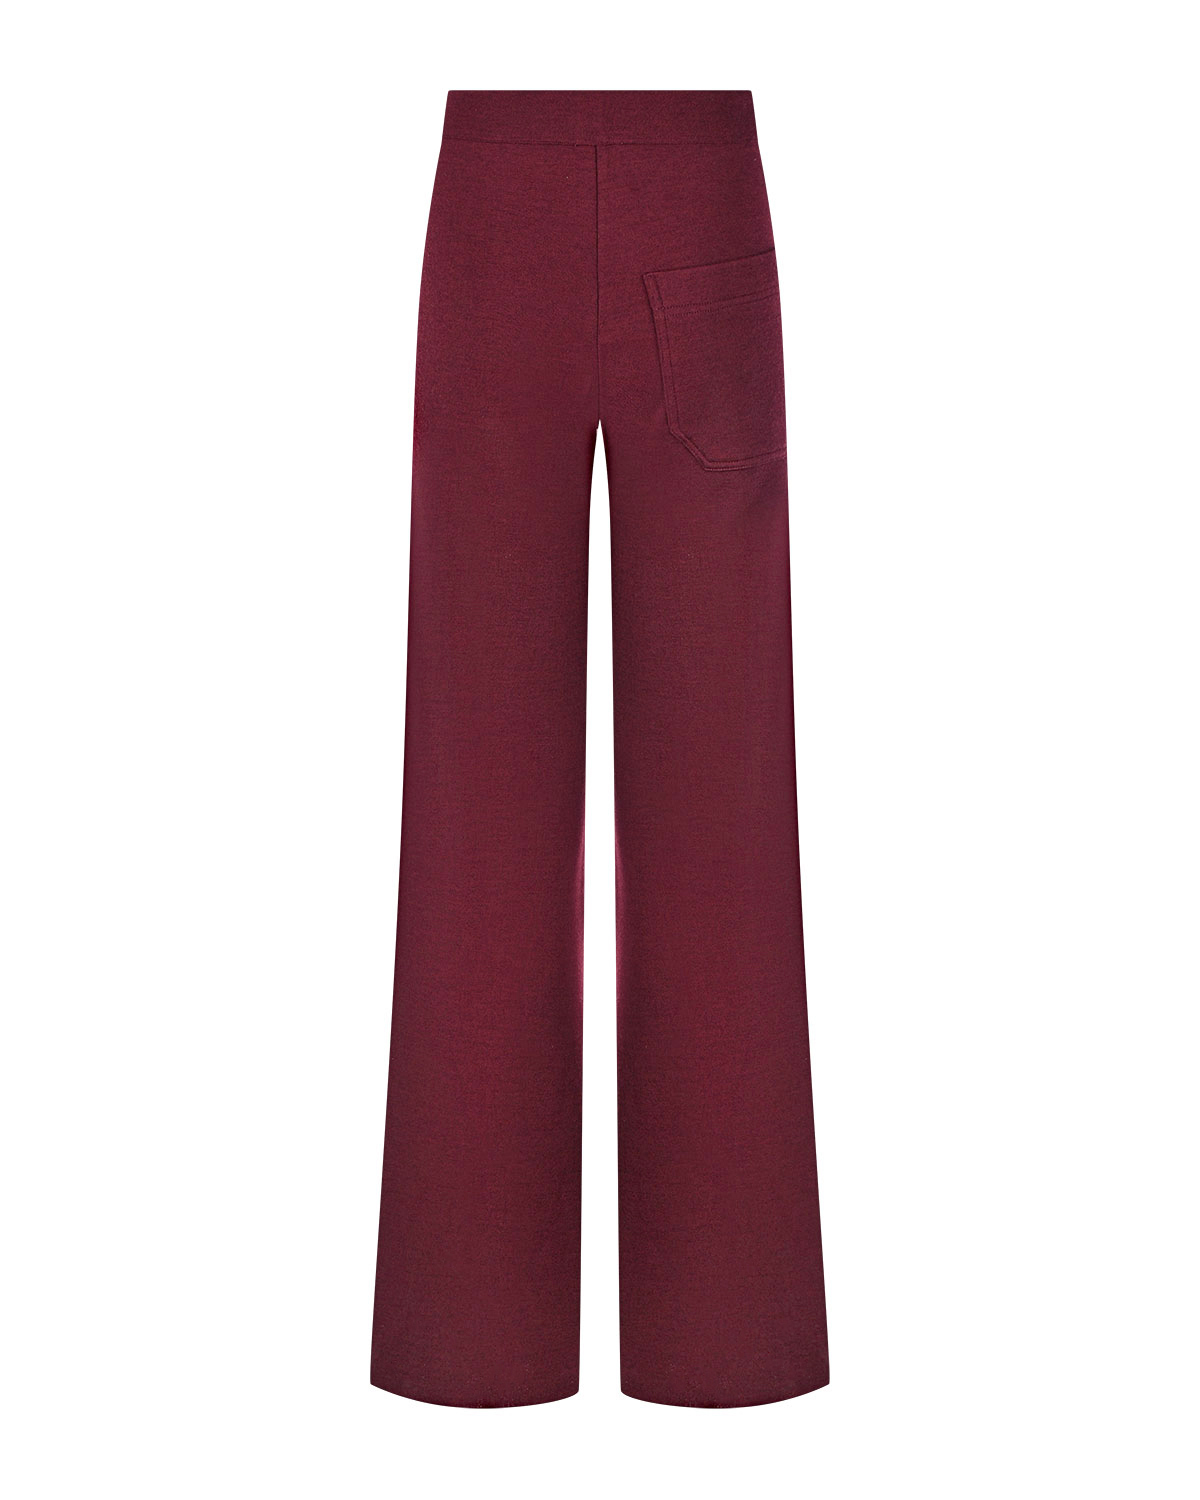 Бордовые спортивные брюки со стрелками MRZ, размер 38, цвет бордовый - фото 6